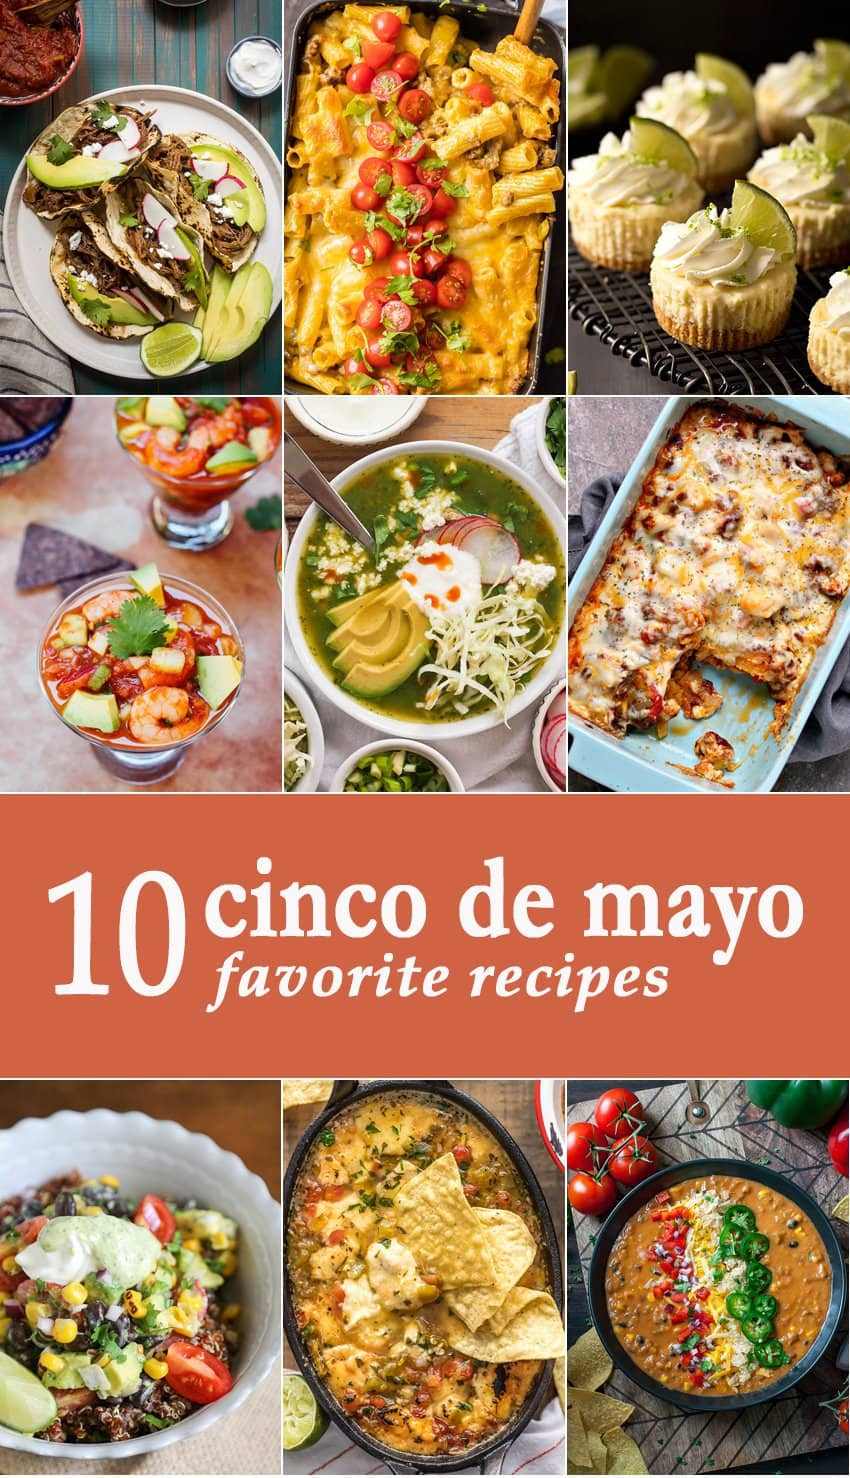 Cinco De Mayo Traditional Food
 10 Favorite Cinco de Mayo Recipes The Cookie Rookie